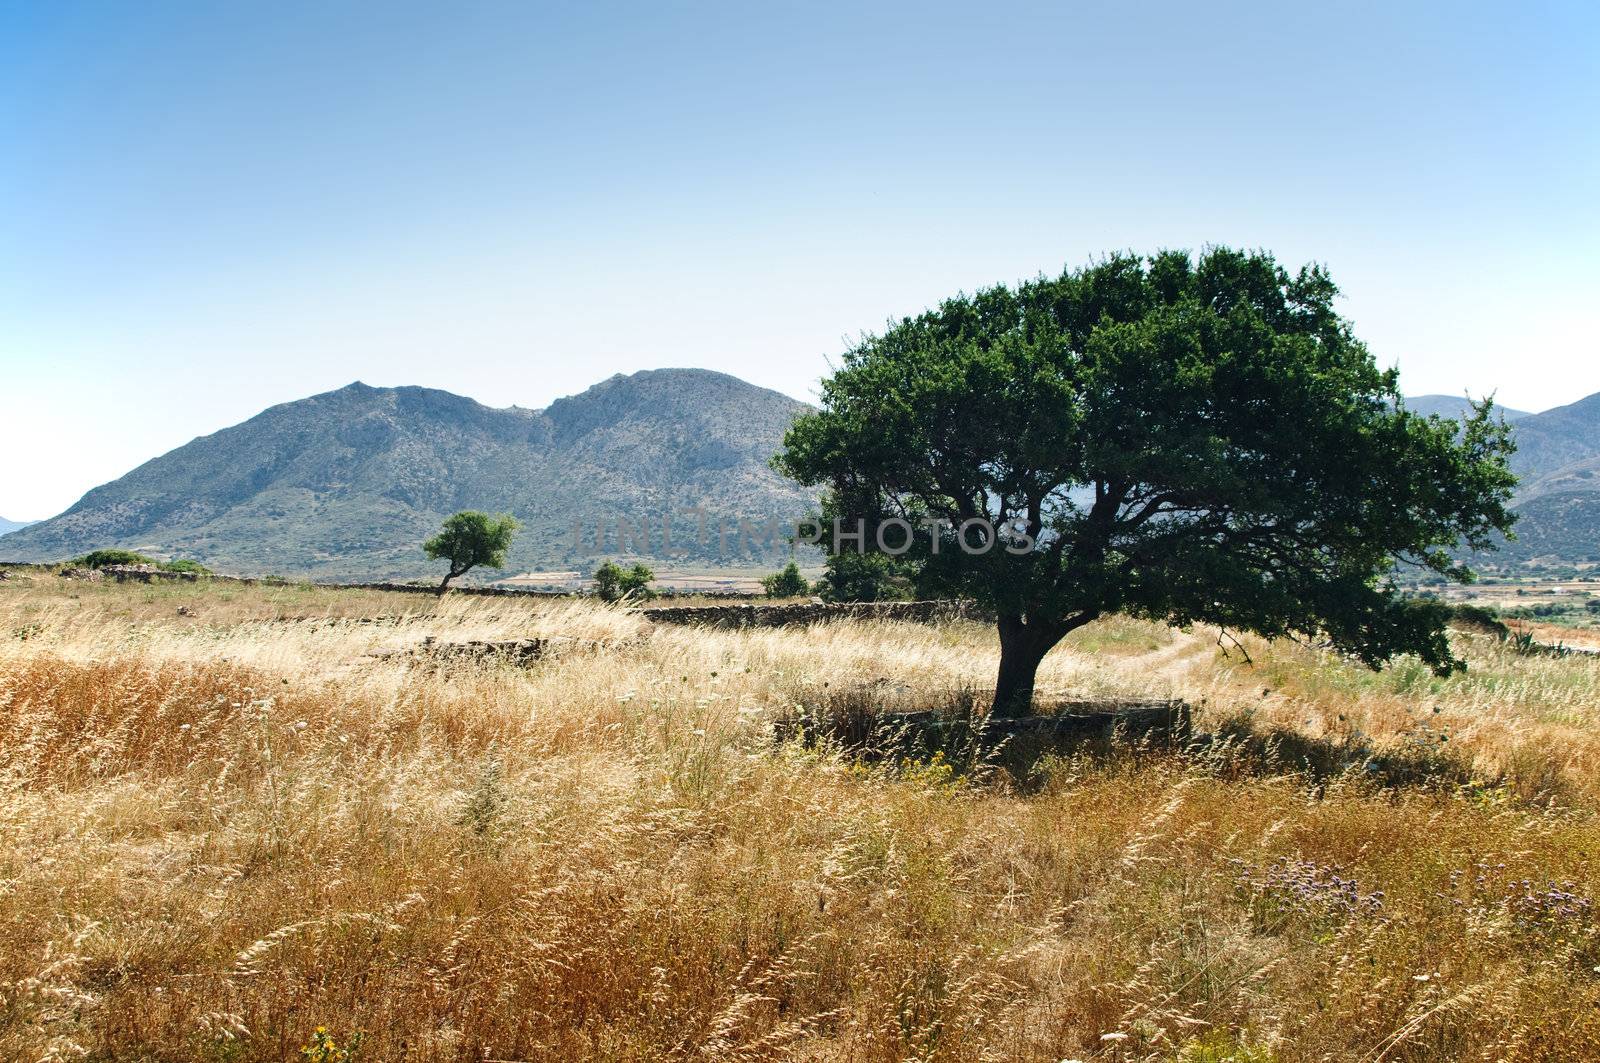 Tree in a mediterranean Landscape, taken in Greece, Naxos